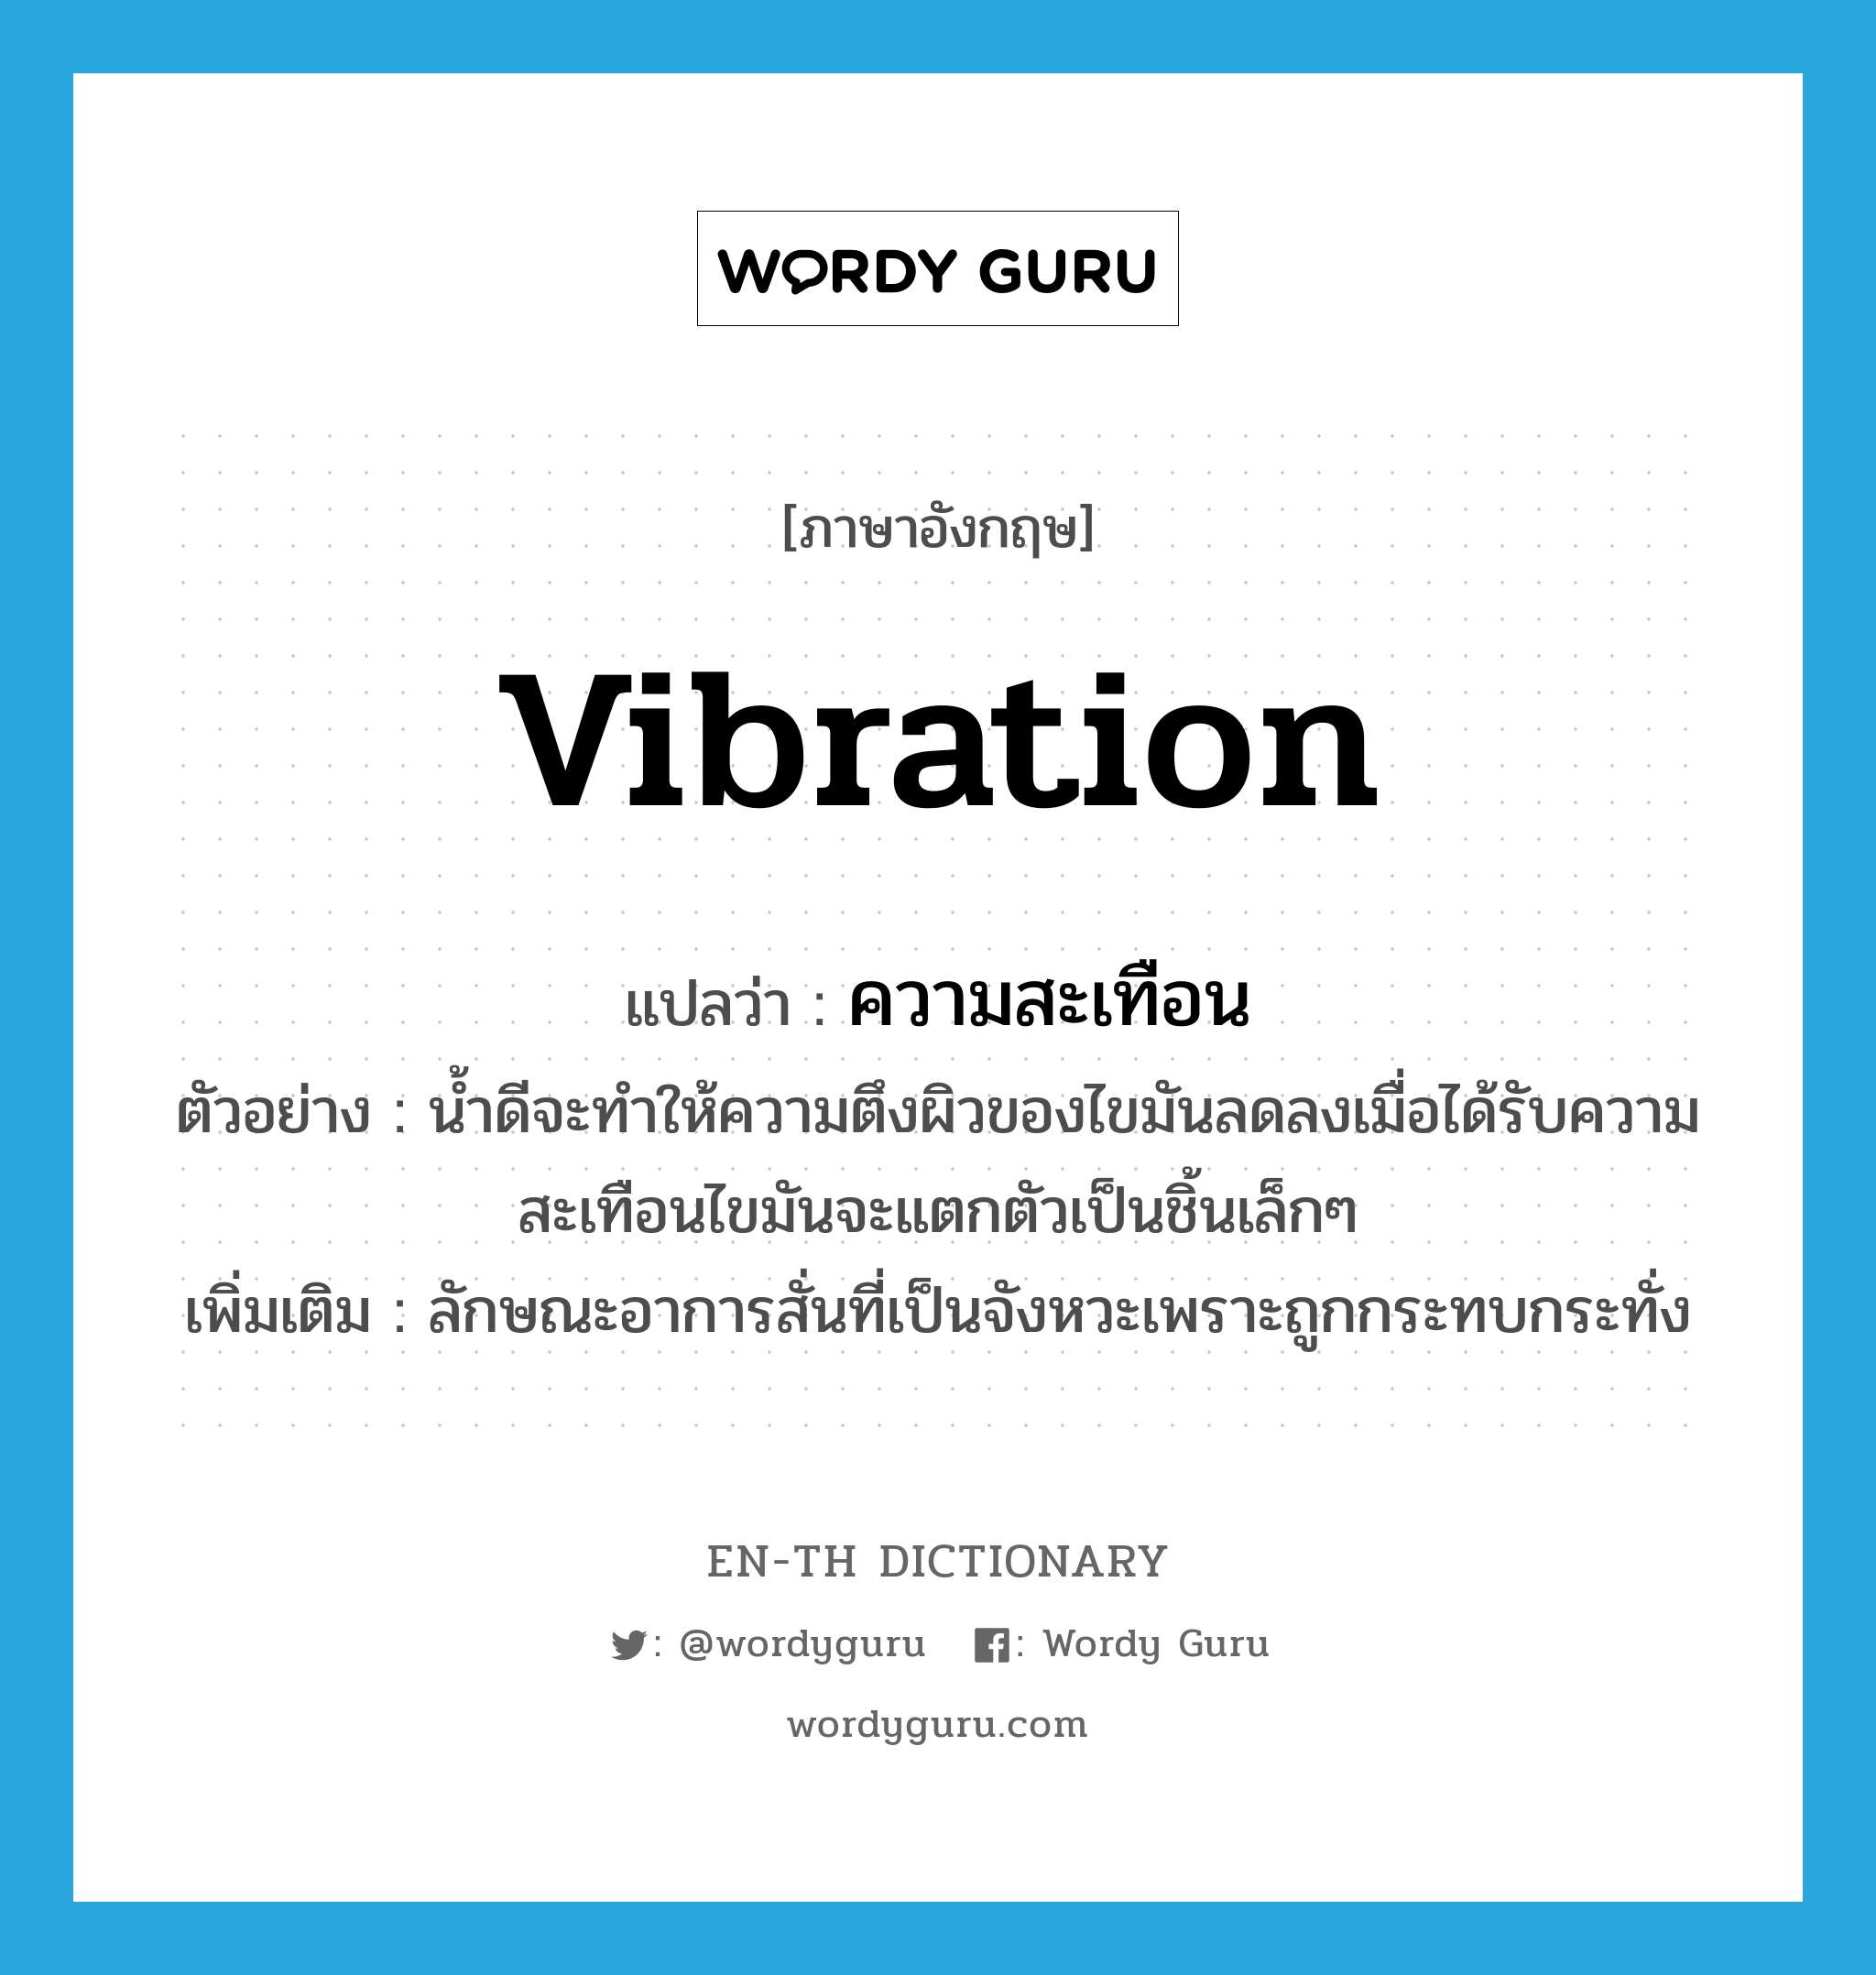 vibration แปลว่า?, คำศัพท์ภาษาอังกฤษ vibration แปลว่า ความสะเทือน ประเภท N ตัวอย่าง น้ำดีจะทำให้ความตึงผิวของไขมันลดลงเมื่อได้รับความสะเทือนไขมันจะแตกตัวเป็นชิ้นเล็กๆ เพิ่มเติม ลักษณะอาการสั่นที่เป็นจังหวะเพราะถูกกระทบกระทั่ง หมวด N